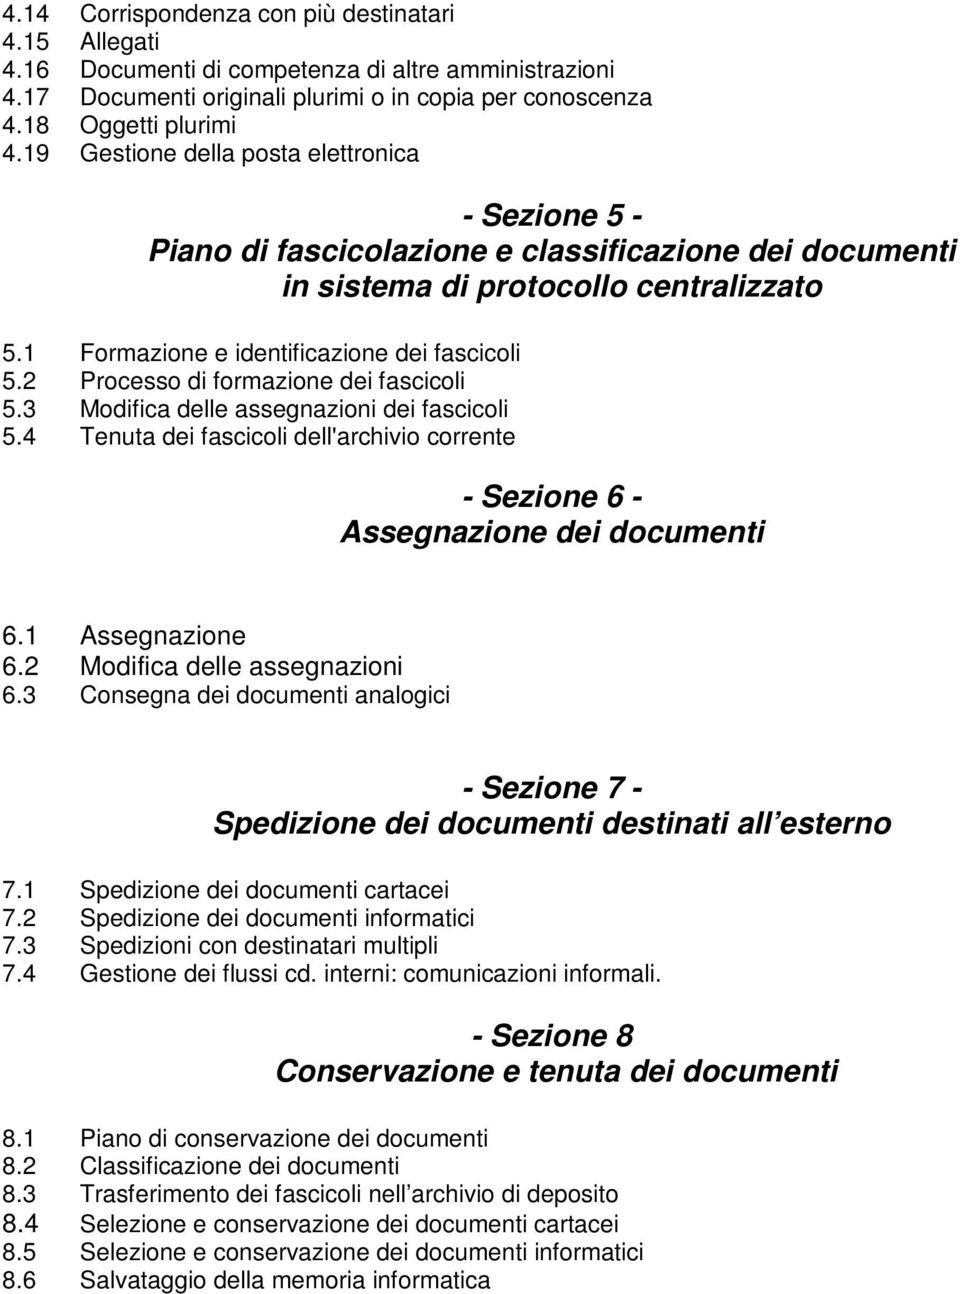 2 Processo di formazione dei fascicoli 5.3 Modifica delle assegnazioni dei fascicoli 5.4 Tenuta dei fascicoli dell'archivio corrente - Sezione 6 - Assegnazione dei documenti 6.1 Assegnazione 6.